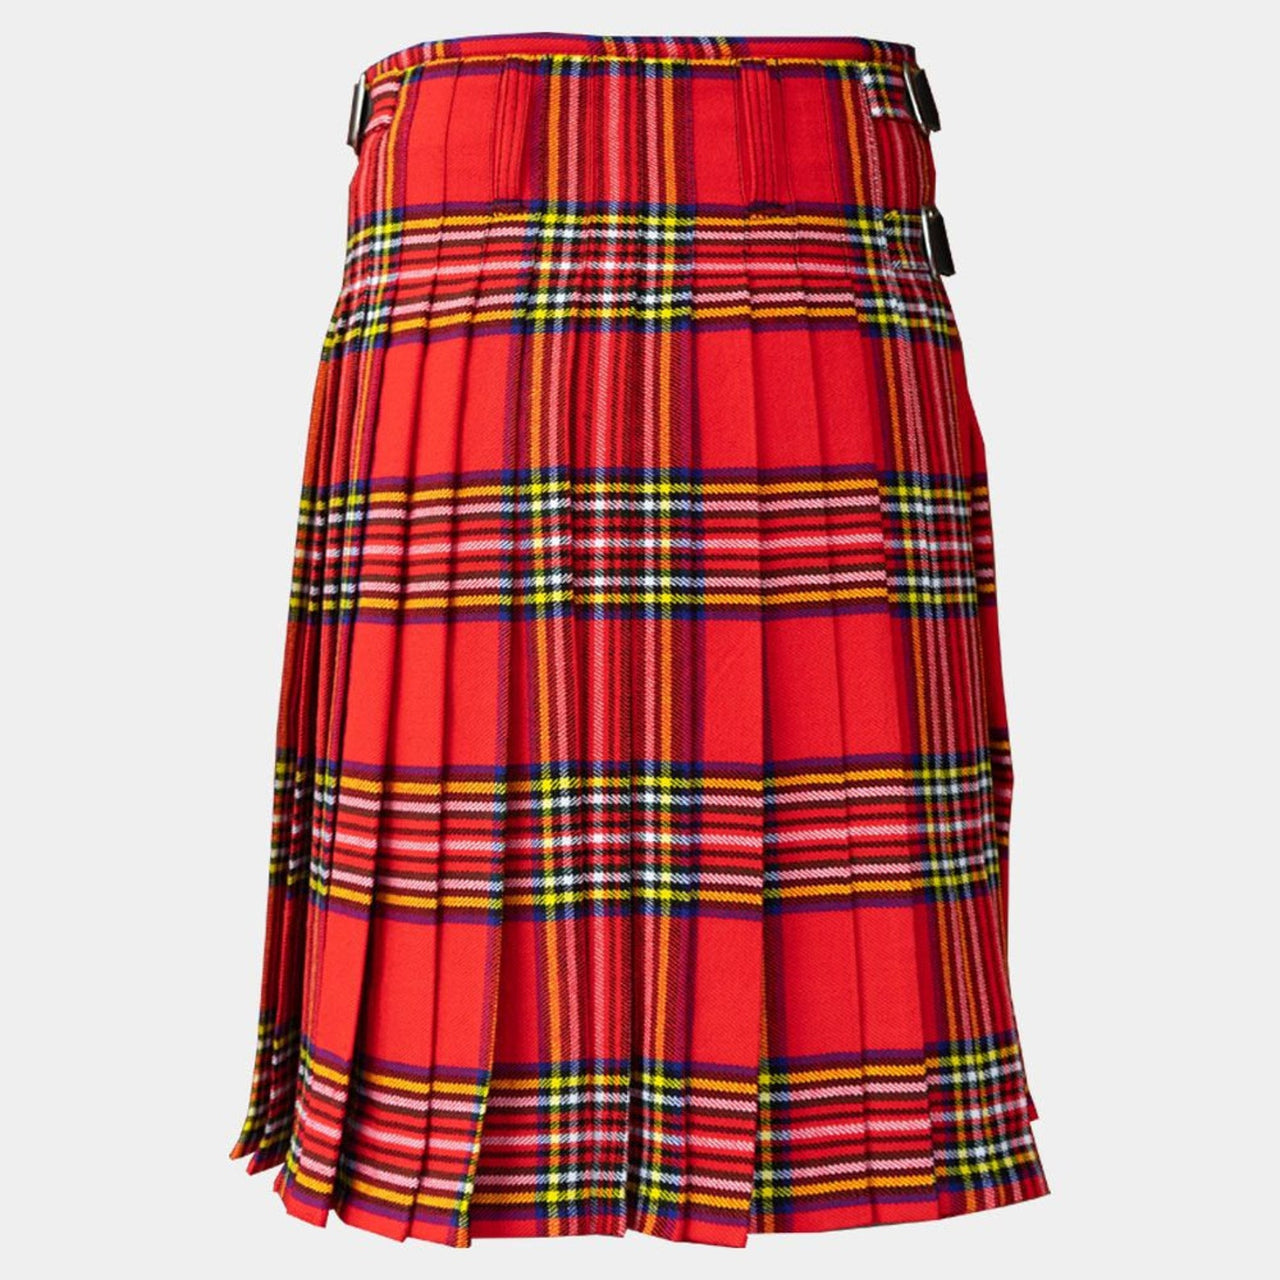 Men's Scottish Royal Stewart Tartan Kilt Handmade Traditional 8 Yard Kilts